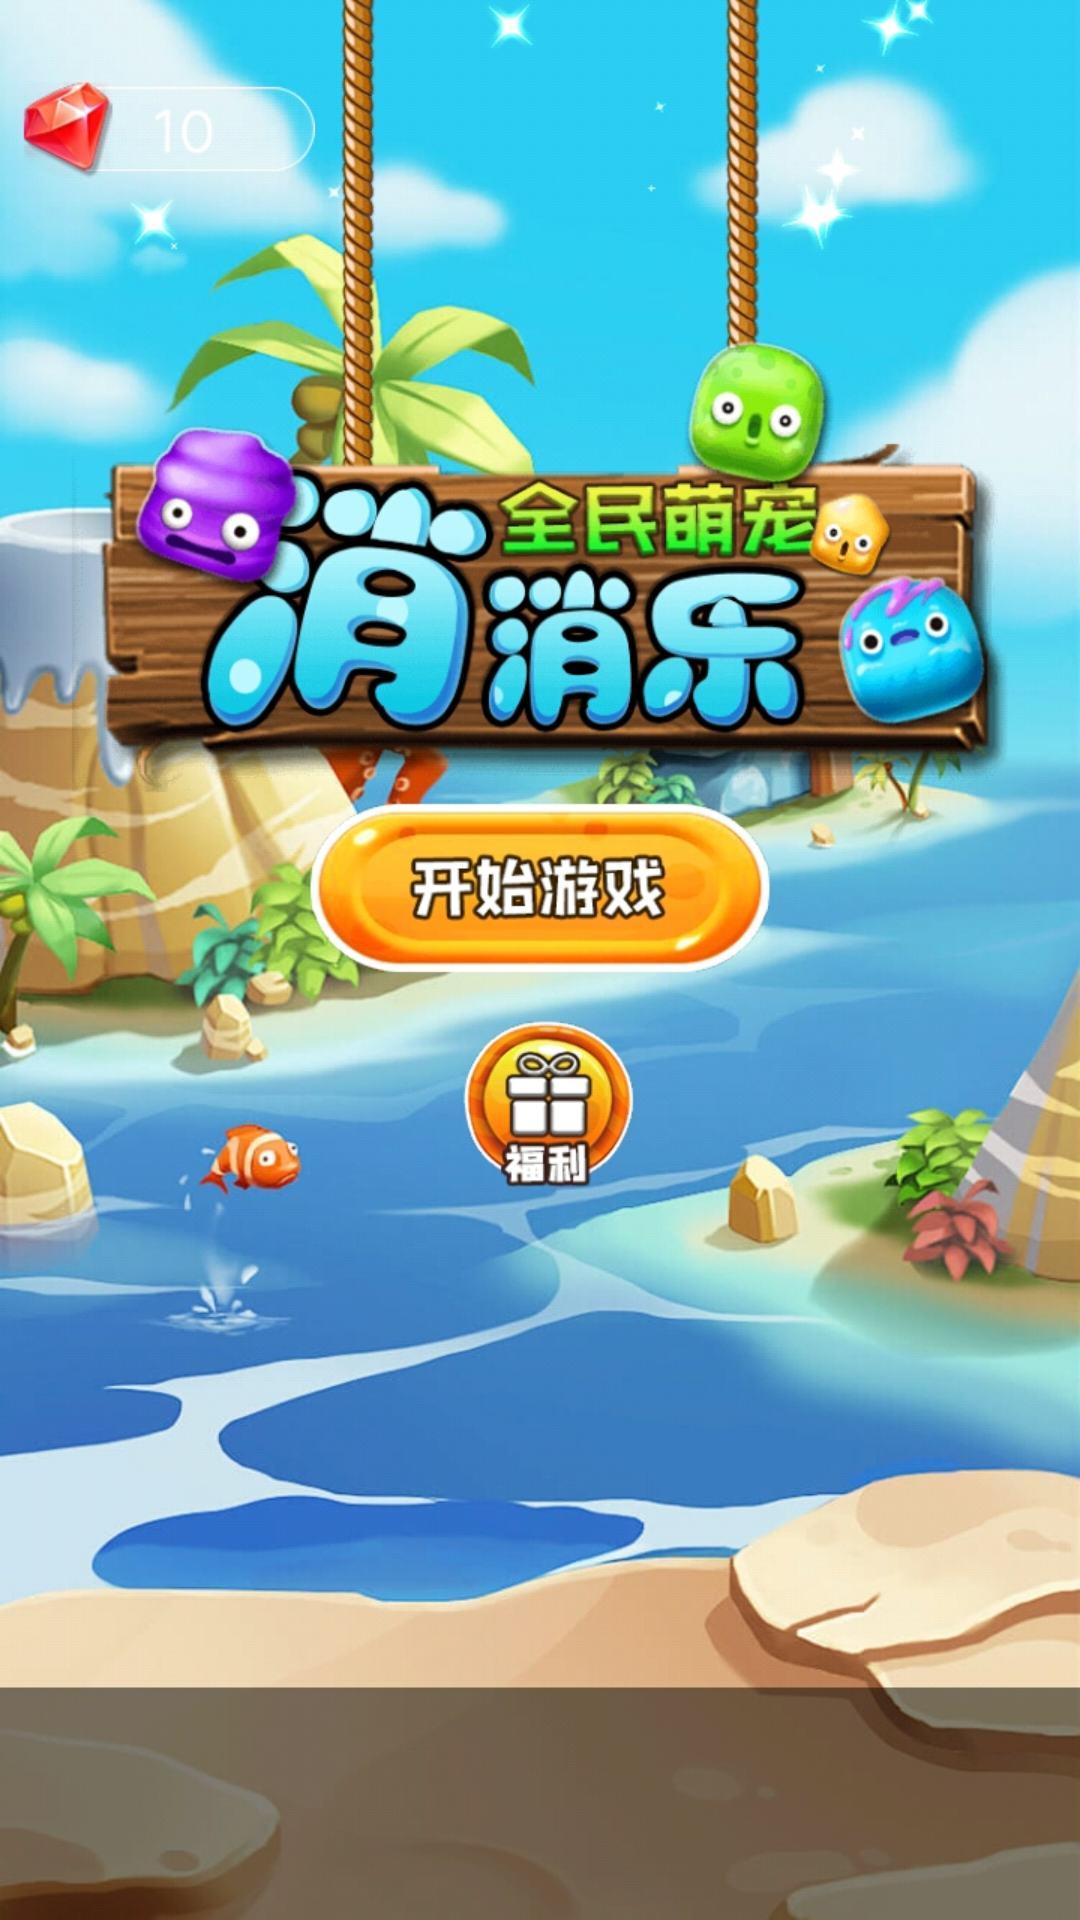 Screenshot 1 of សត្វចិញ្ចឹមដ៏គួរឱ្យស្រលាញ់ទាំងអស់ Xiaoxiaole 